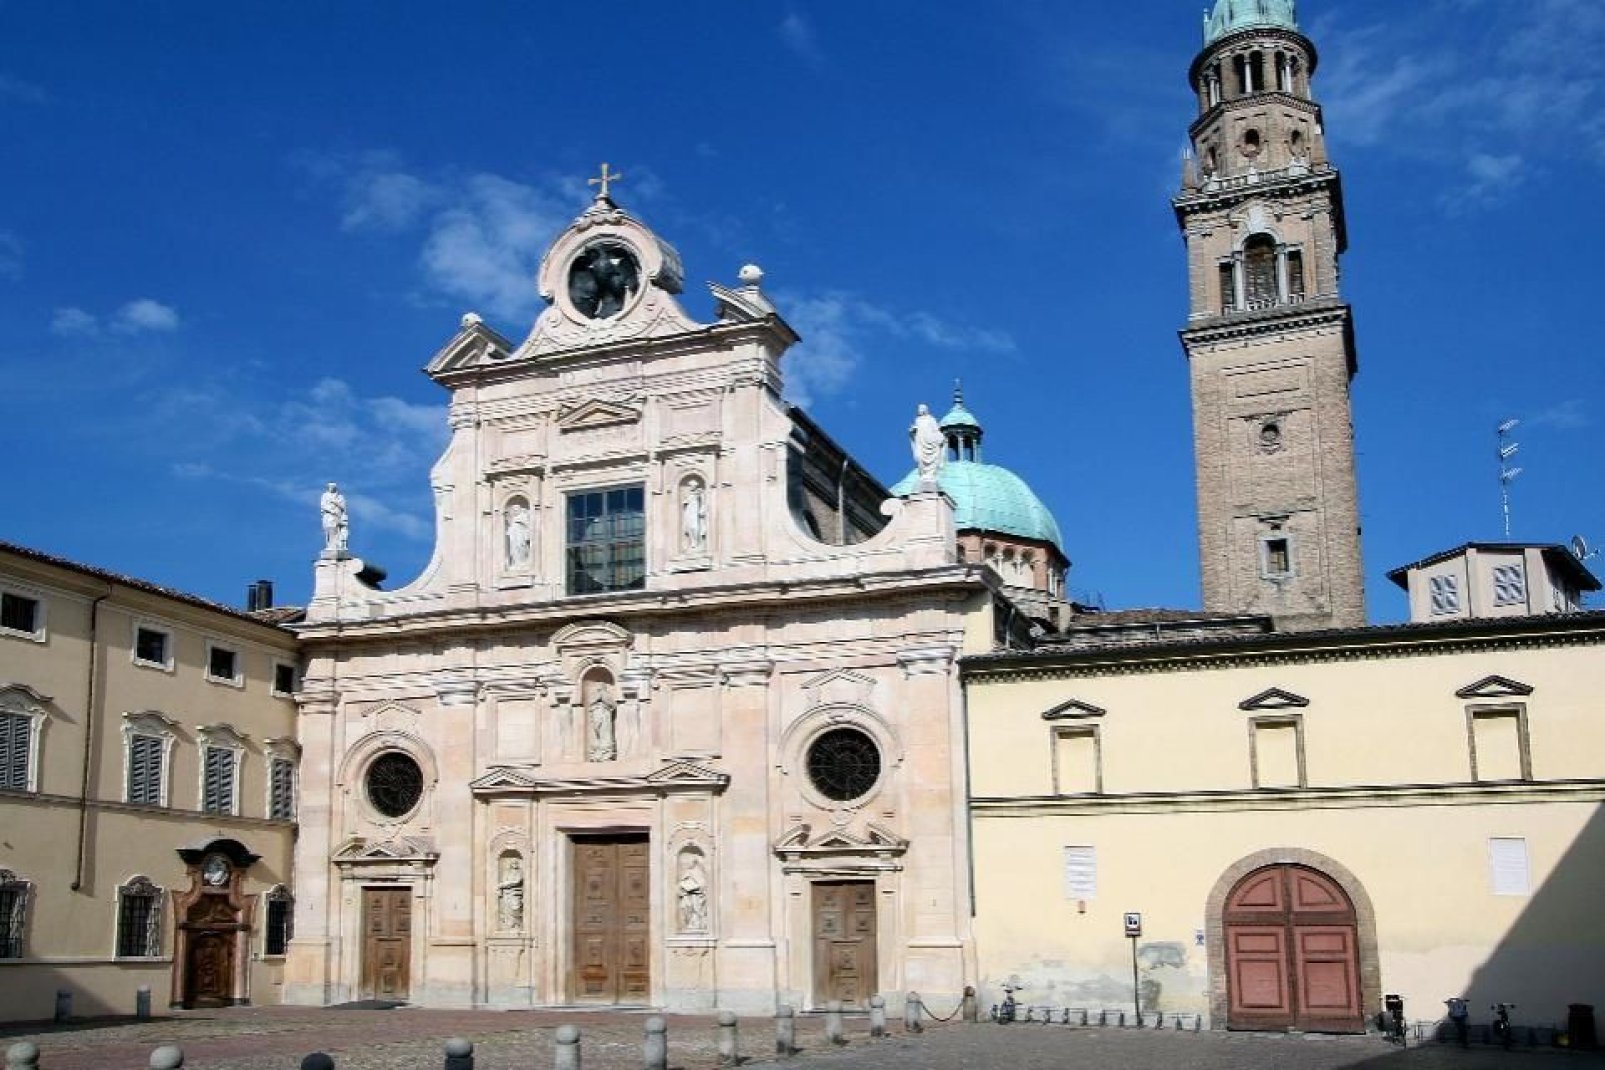 Parma, al pari di molte altre città della Regione, è percorsa da numerosi porticati